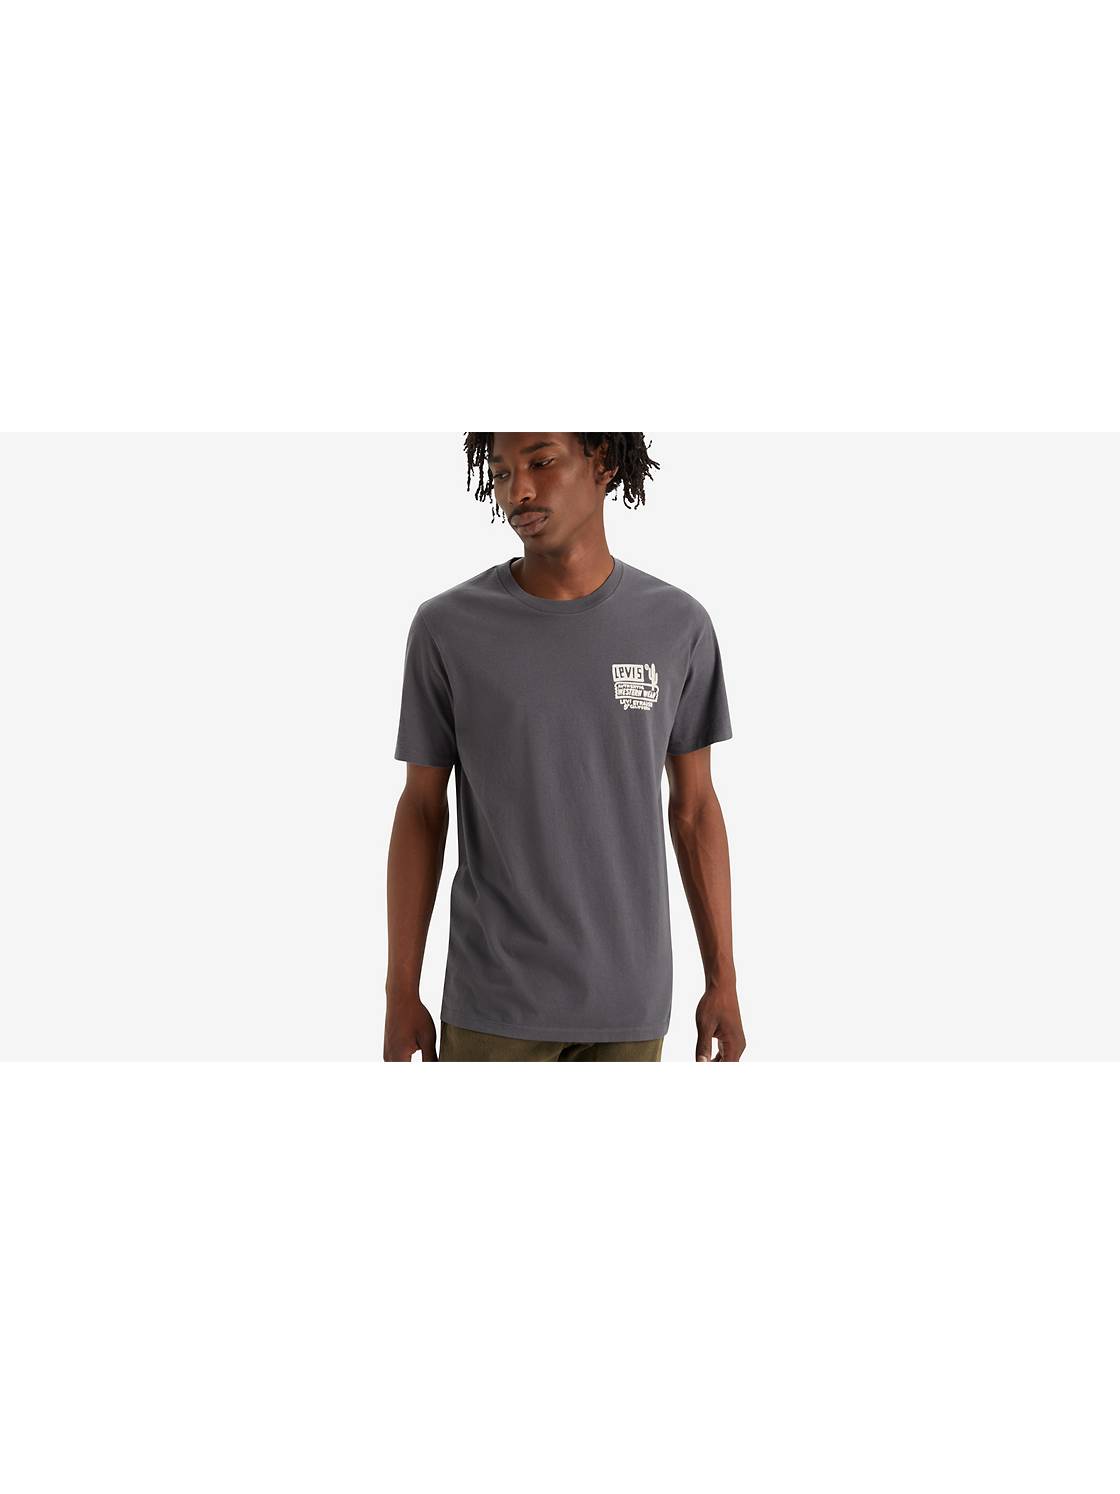 T-shirt Noir Levi's - Homme